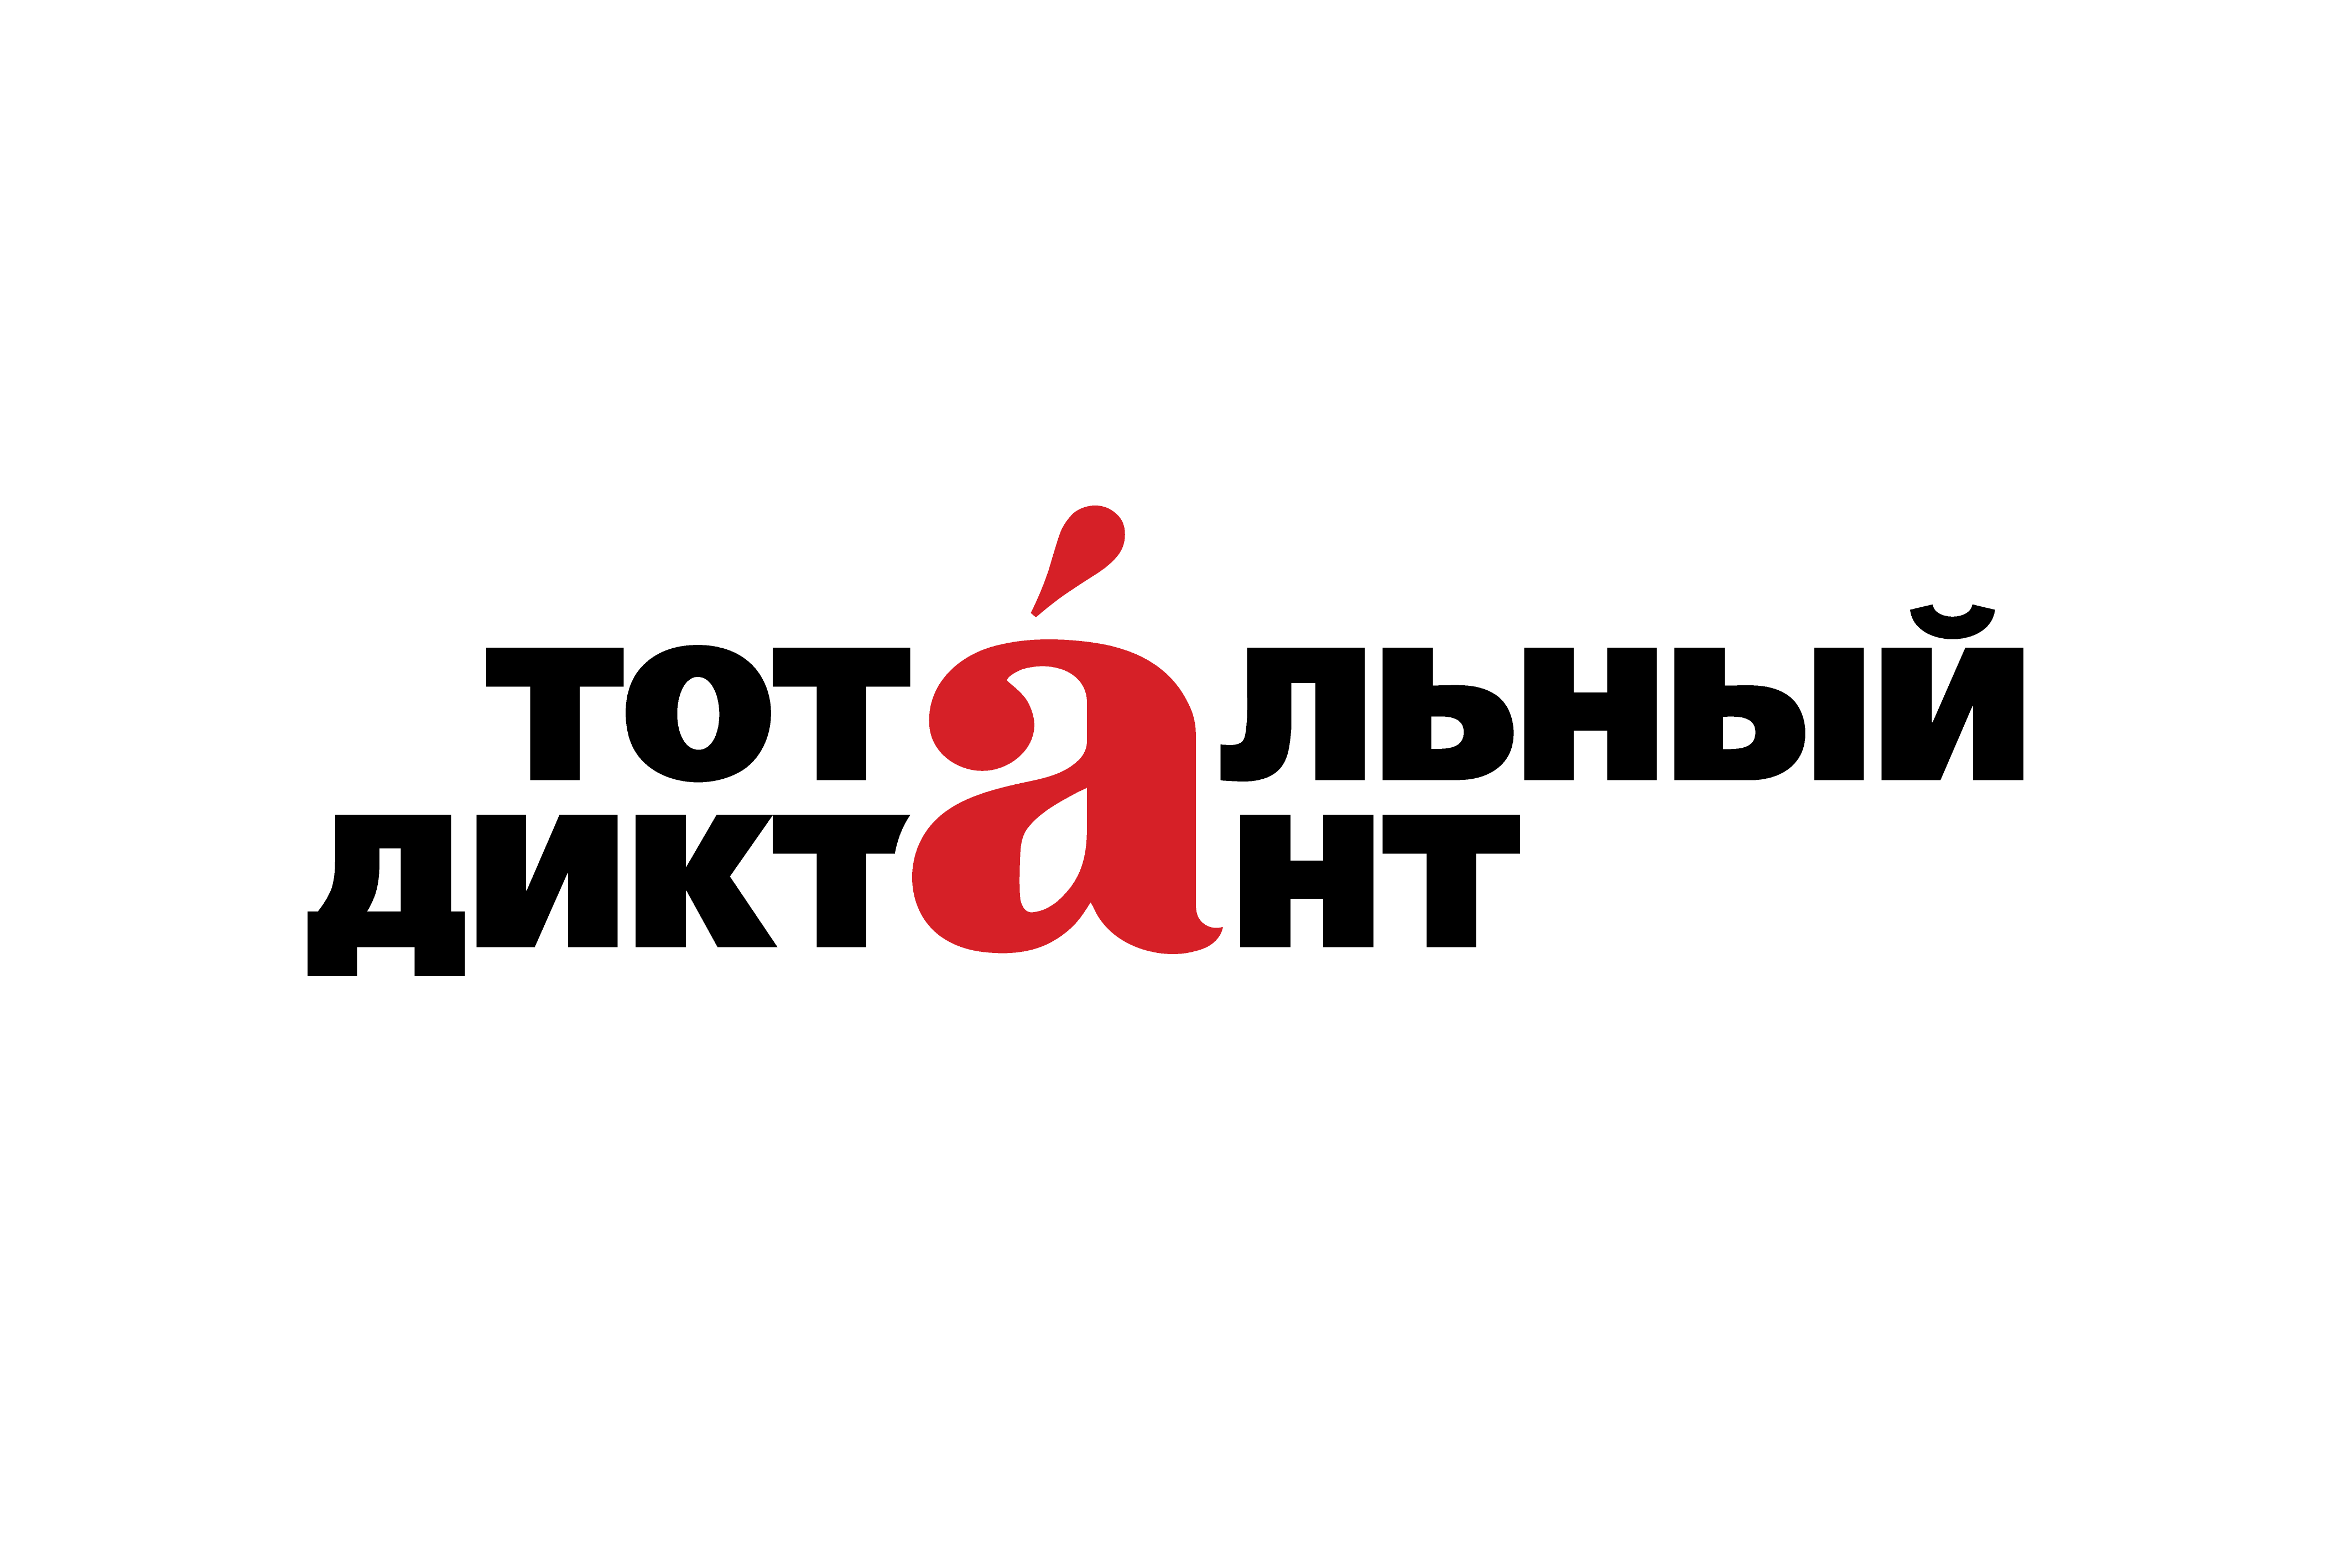 10 000 километров ради грамотности: Тотальный диктант отправился во второй автопробег Республика Башкортостан картина логотип.png